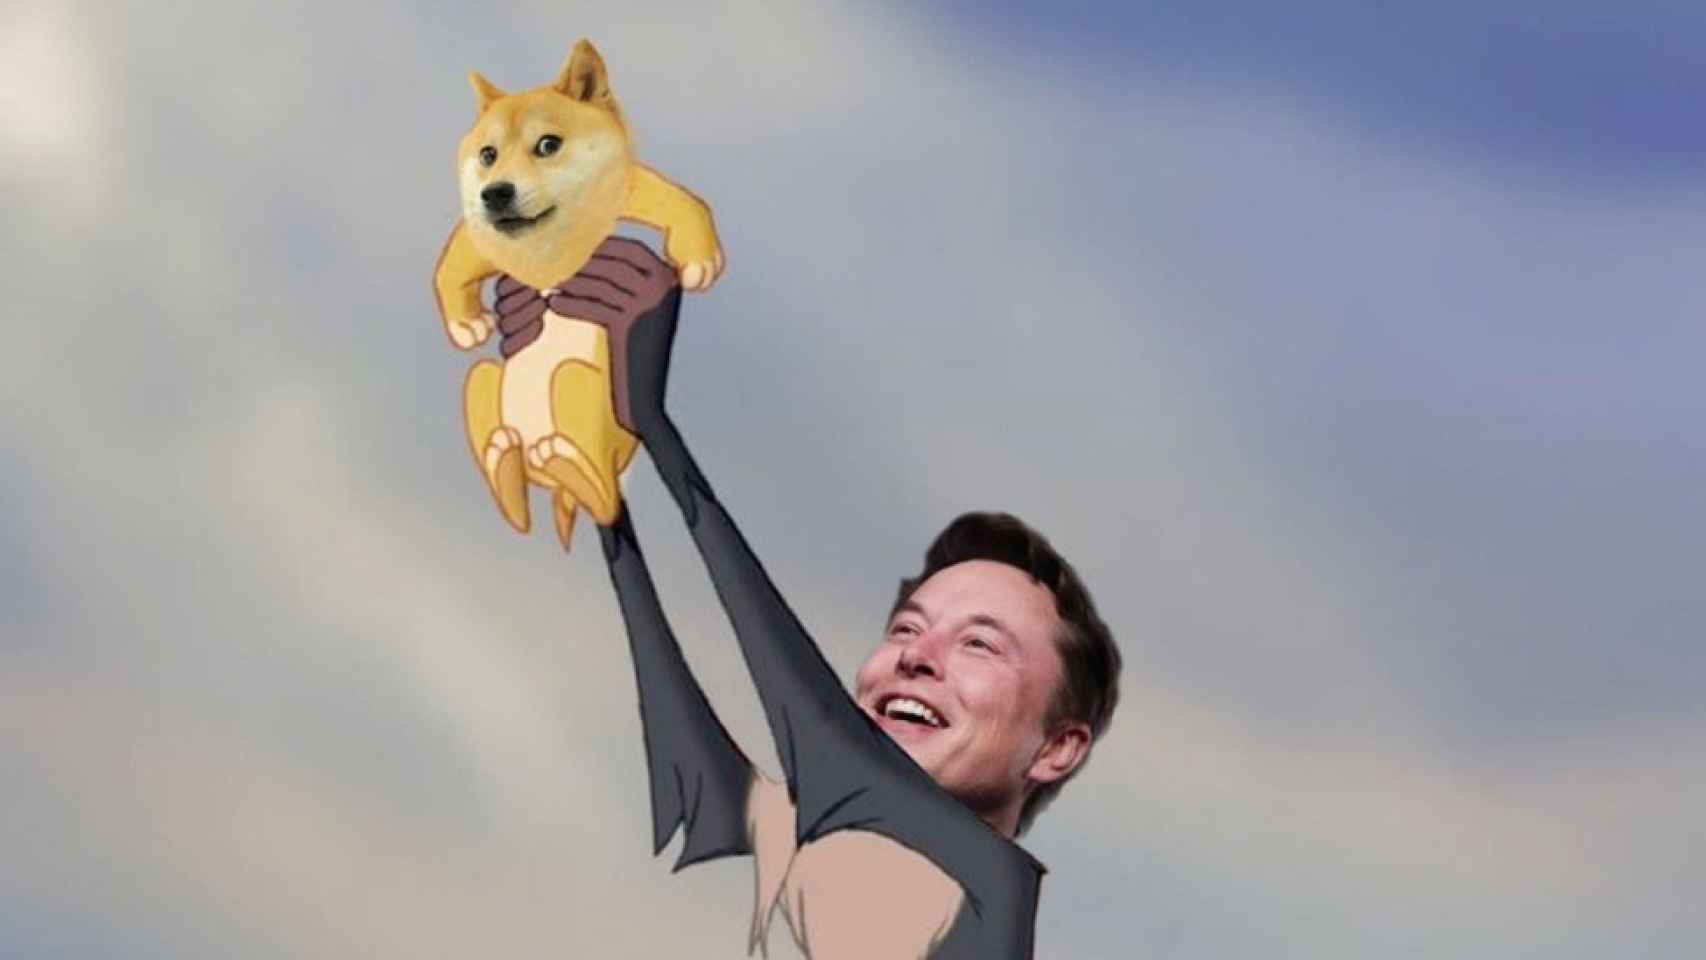 Recorte de un meme publicado por Elon Musk sobre el dogecoin.